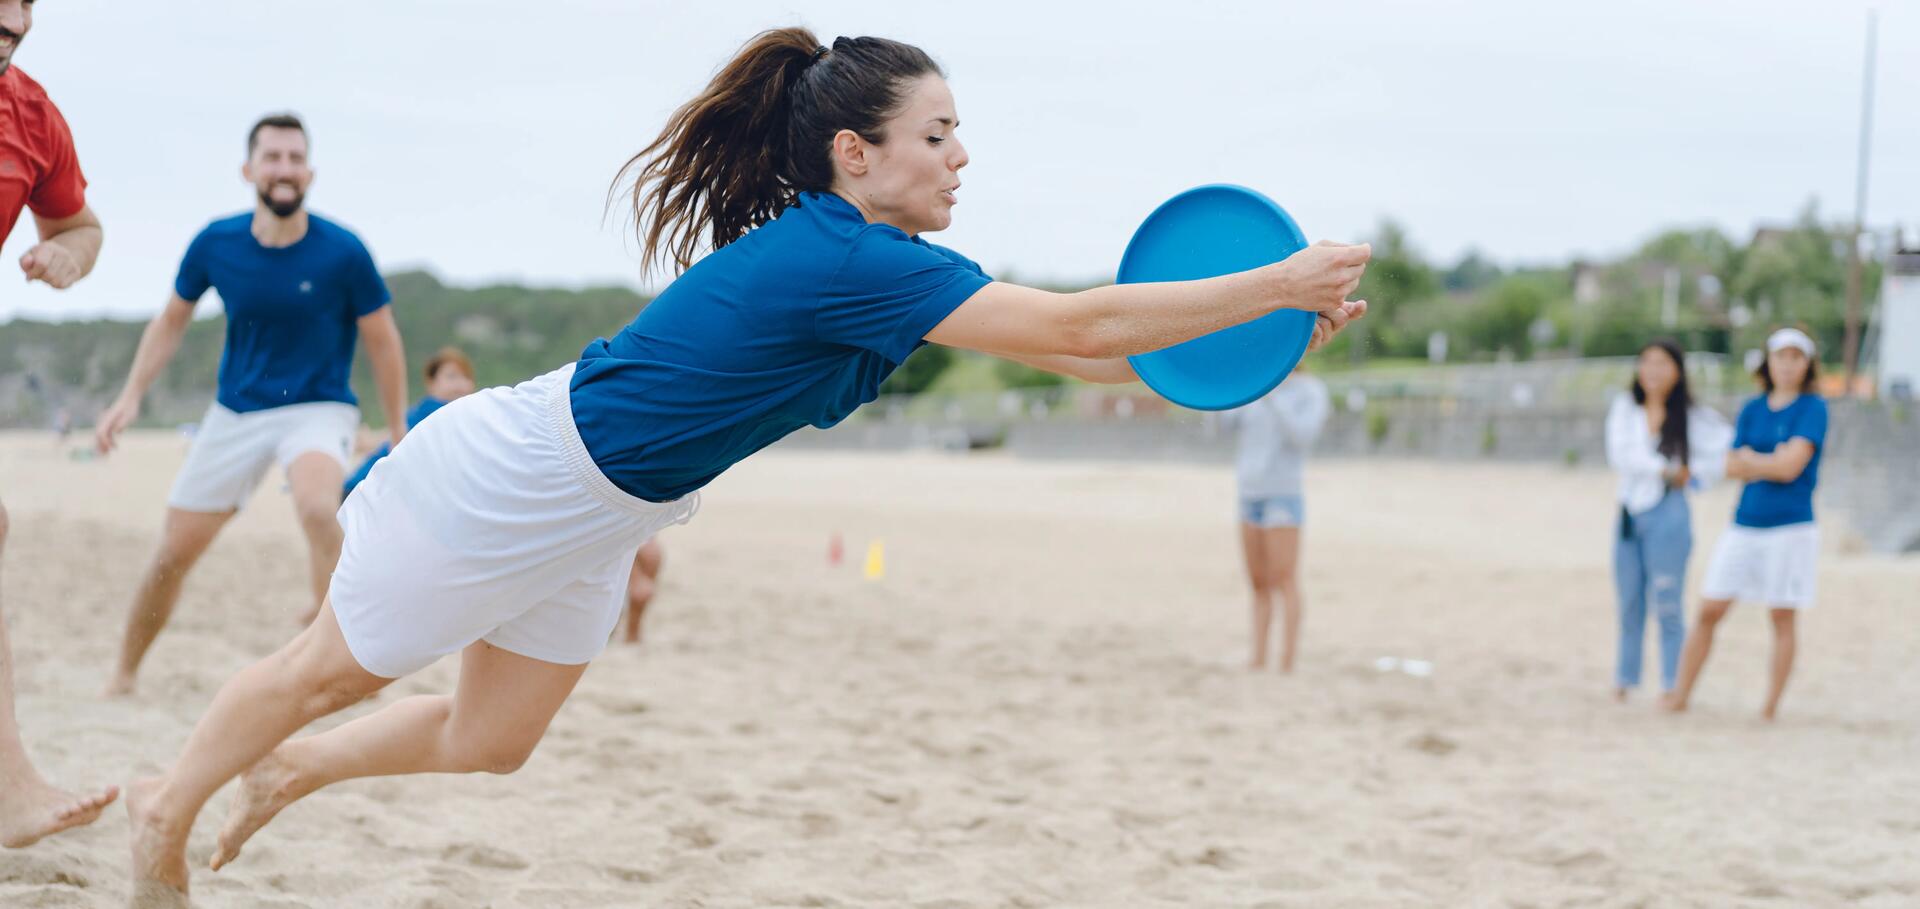 kobieta w stroju sportowym łapiąca frisbee na plaży 